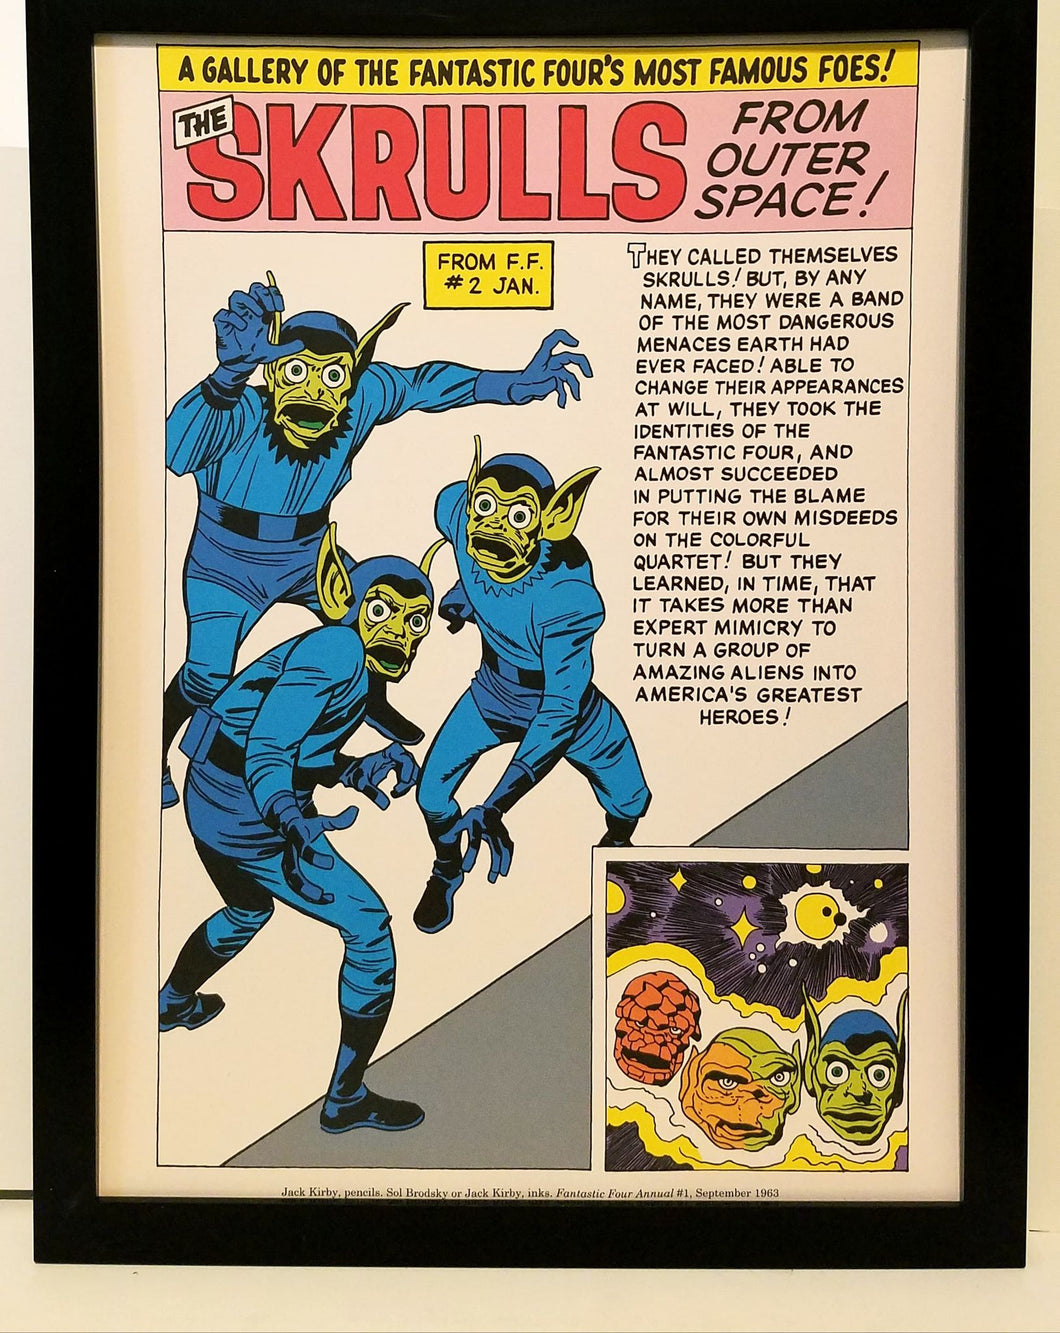 Skrulls Fantastic Four by Jack Kirby 9x12 FRAMED Marvel Comics Vintage Art Print Poster